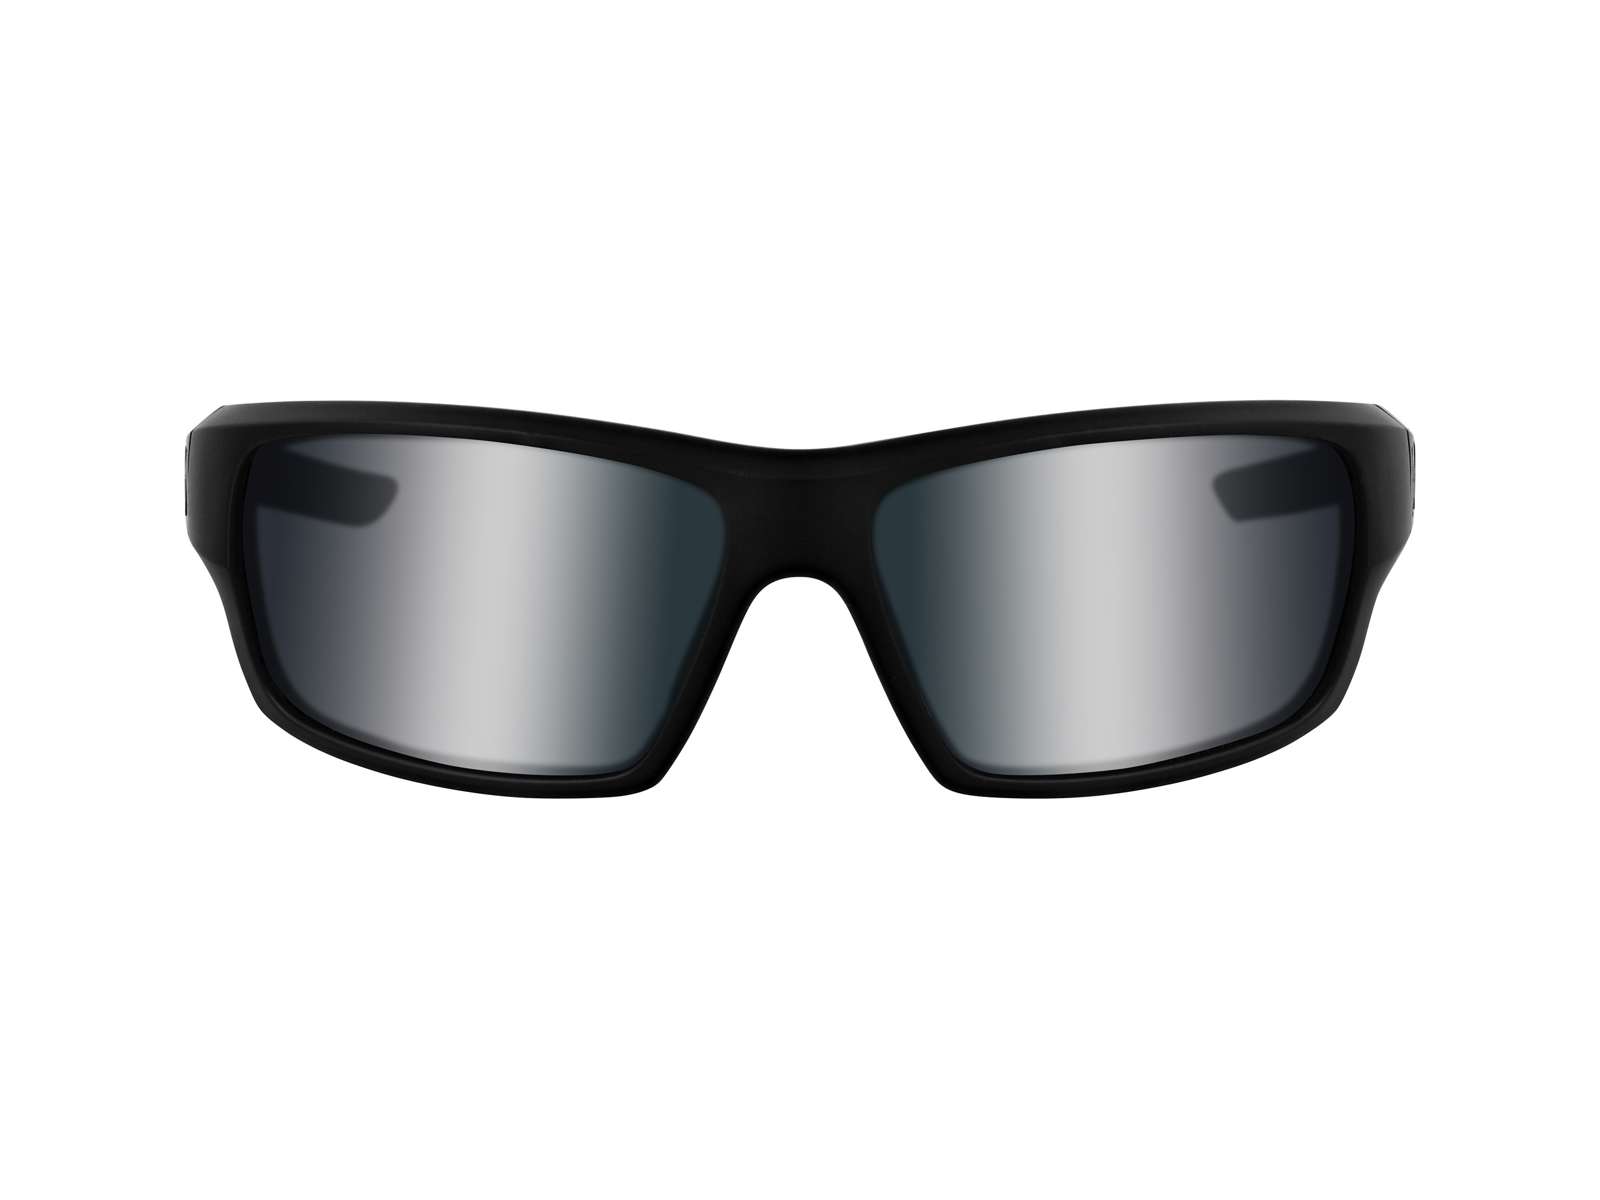 Okulary Przeciwsłoneczne Westin W6 Sport 10 Matte Black